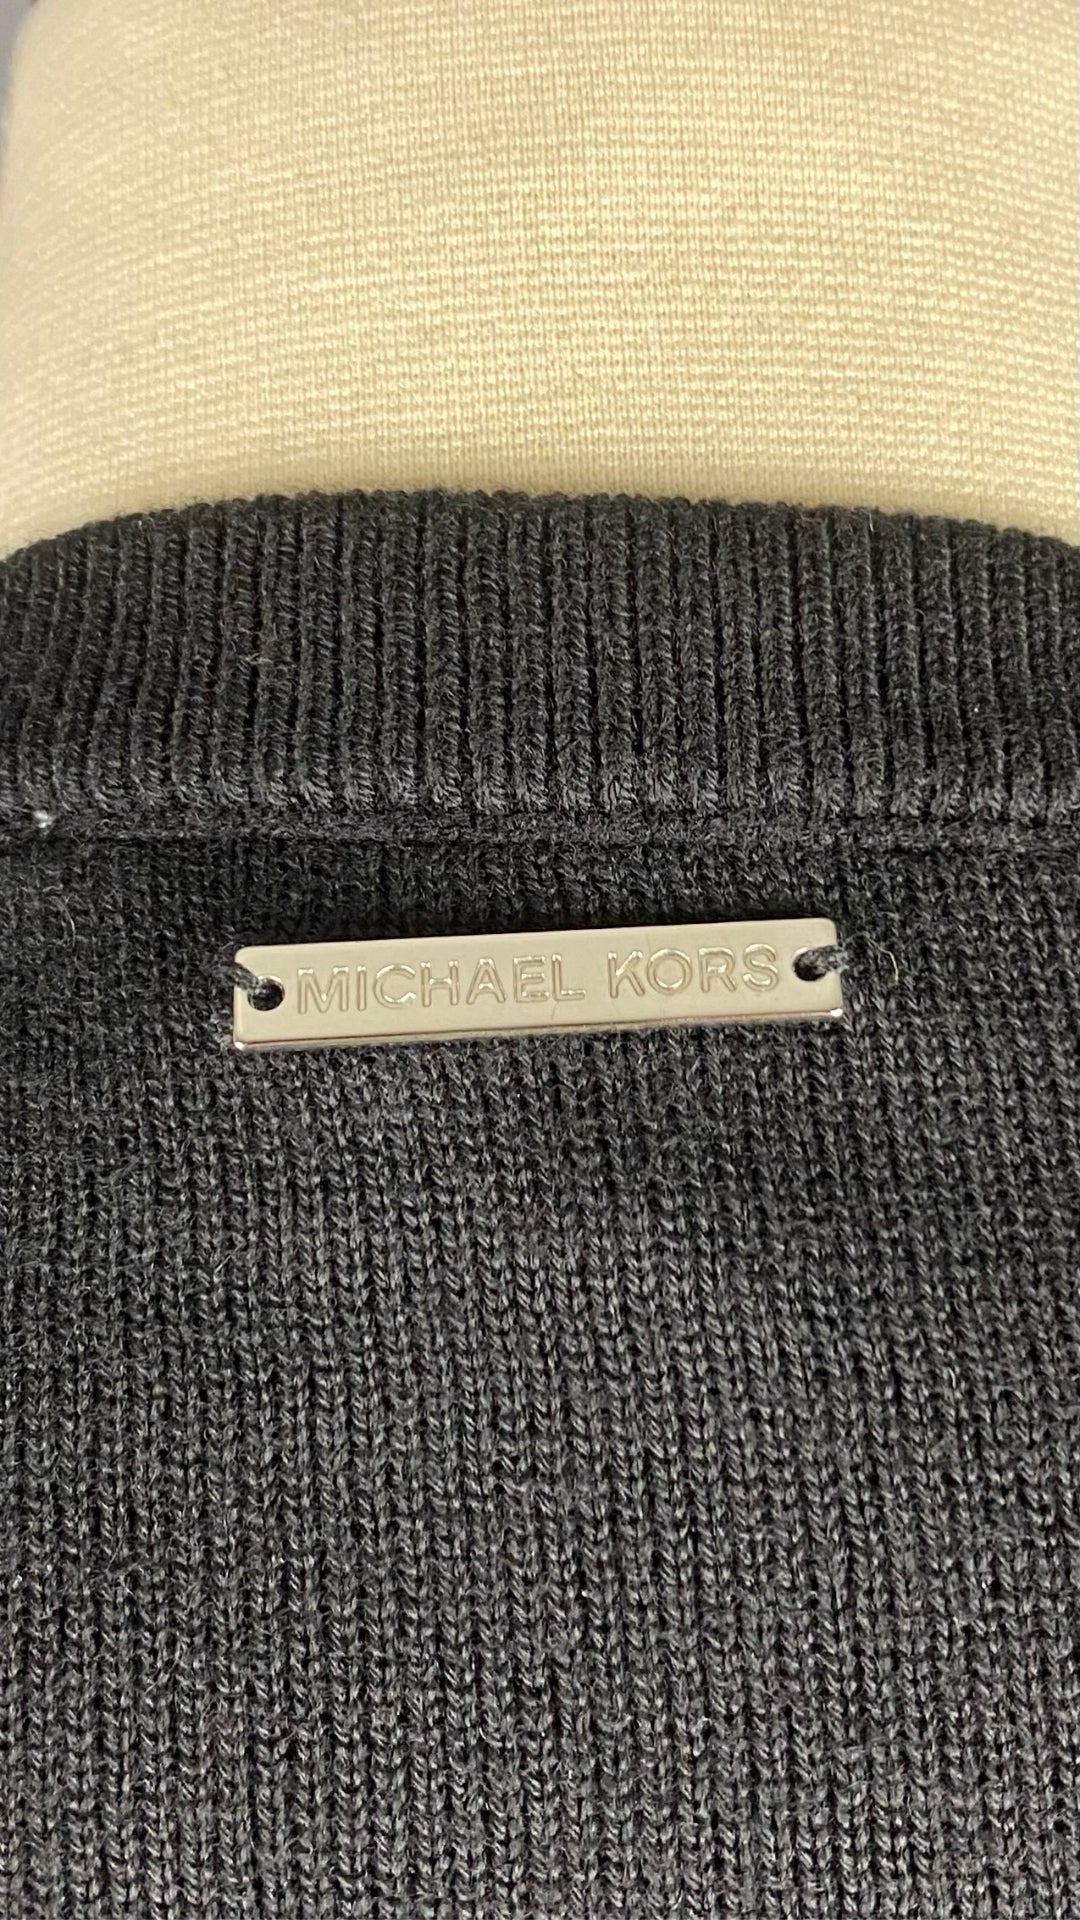 Chandail noir en tricot à encolure à ouvertures majestueuses Michael Kors, taille small. Vue du détail du haut du dos.